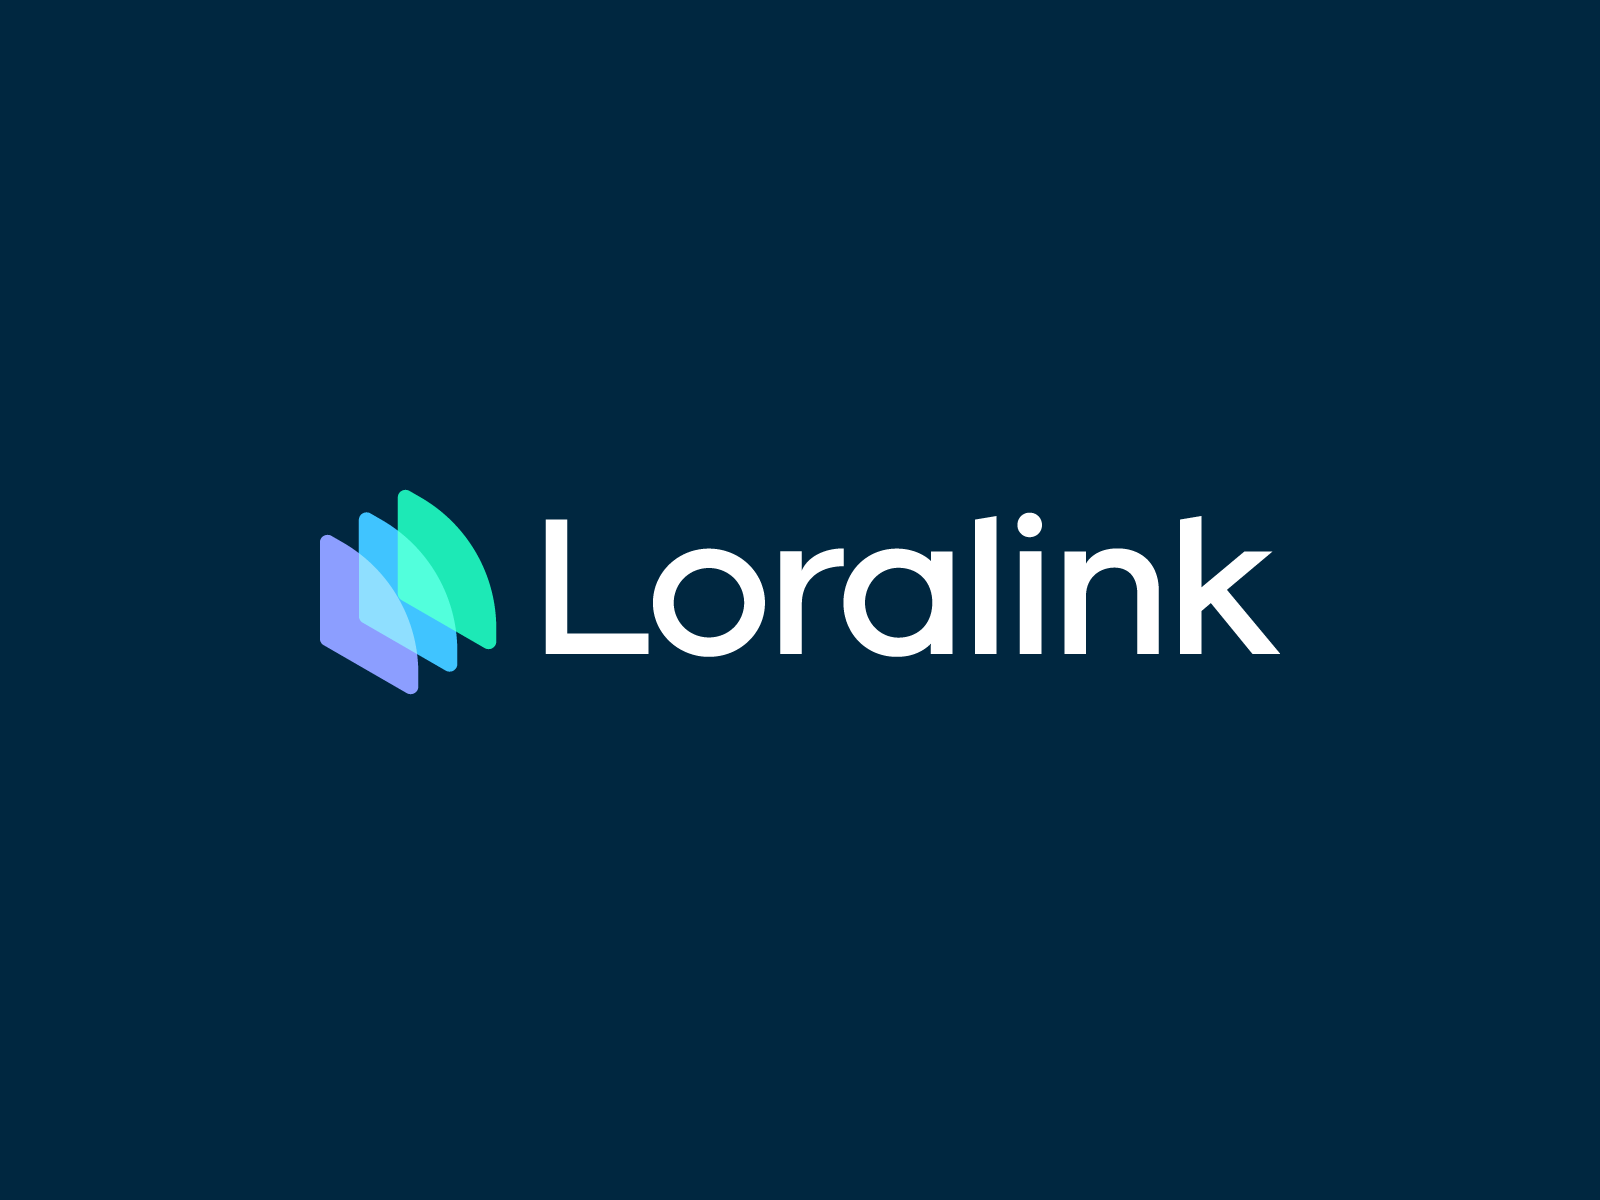 Loralink – Logo design